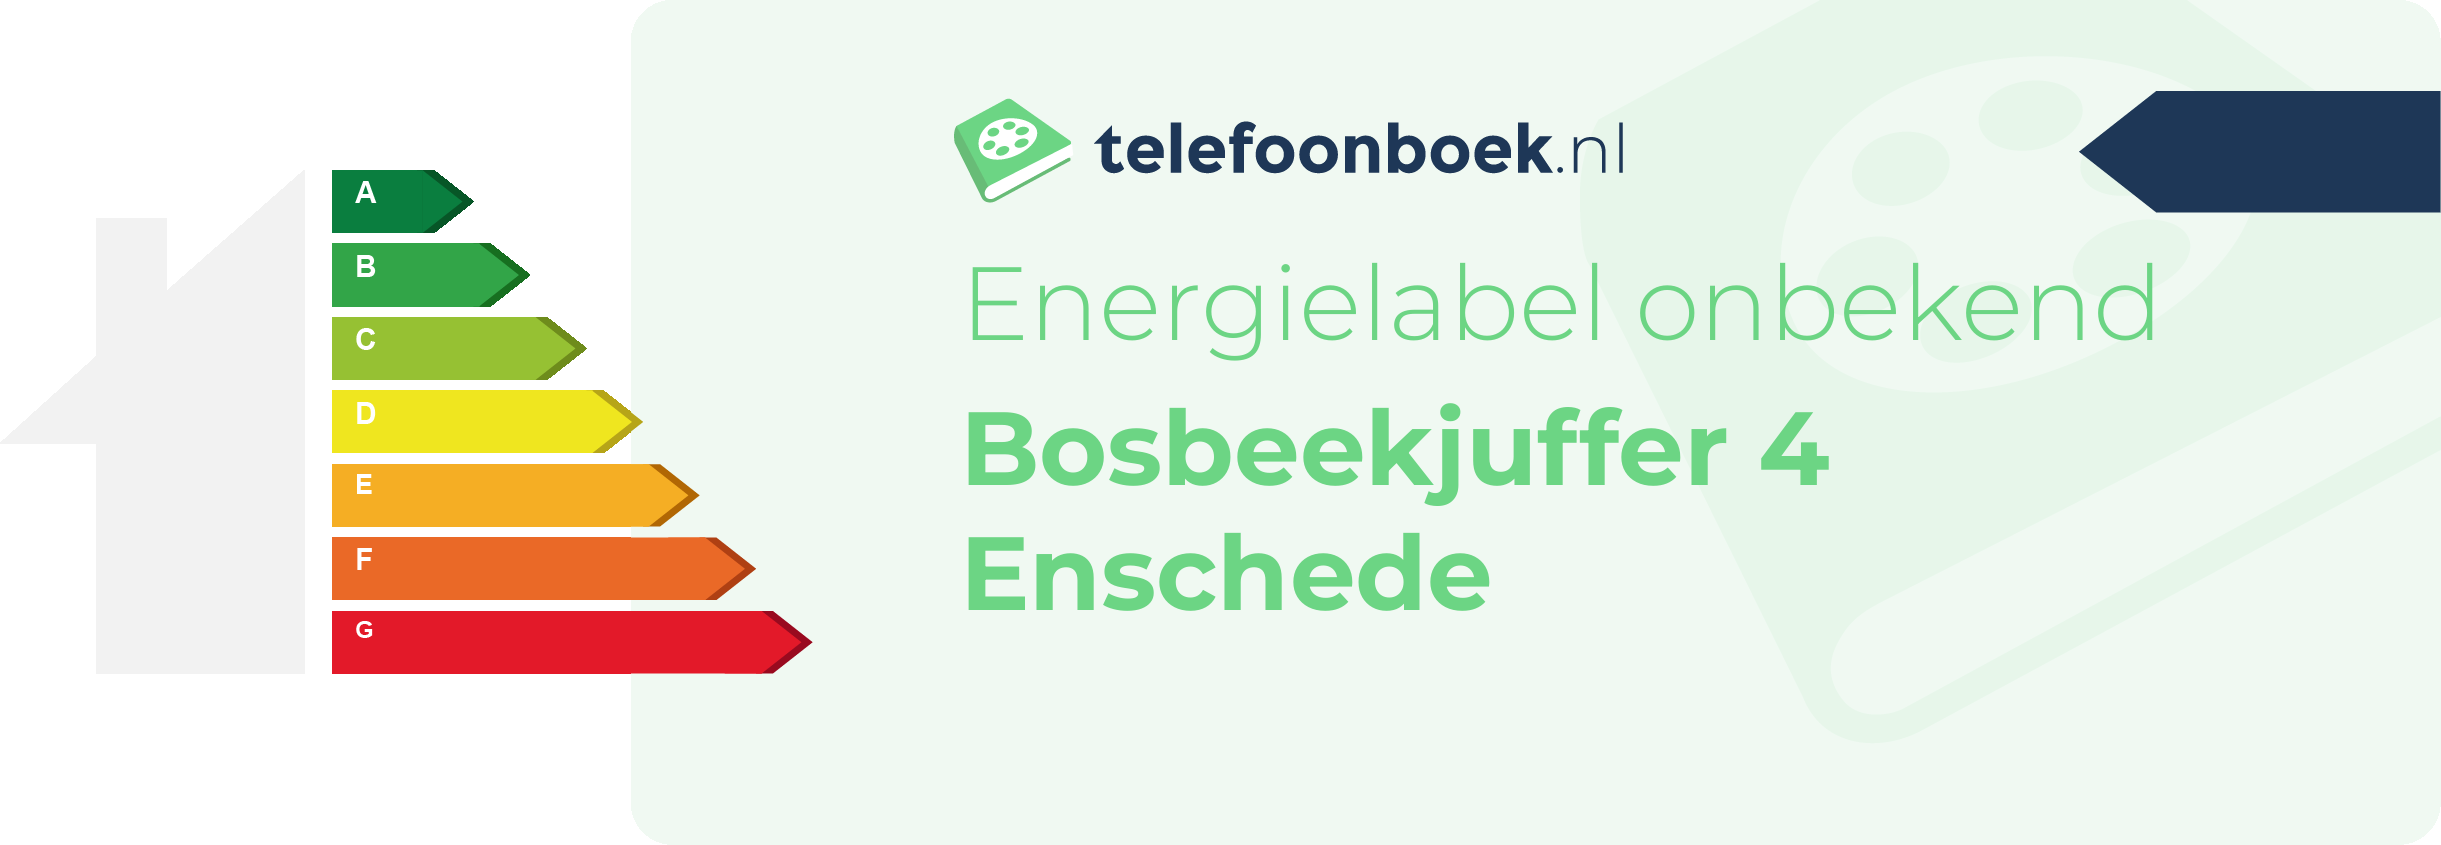 Energielabel Bosbeekjuffer 4 Enschede